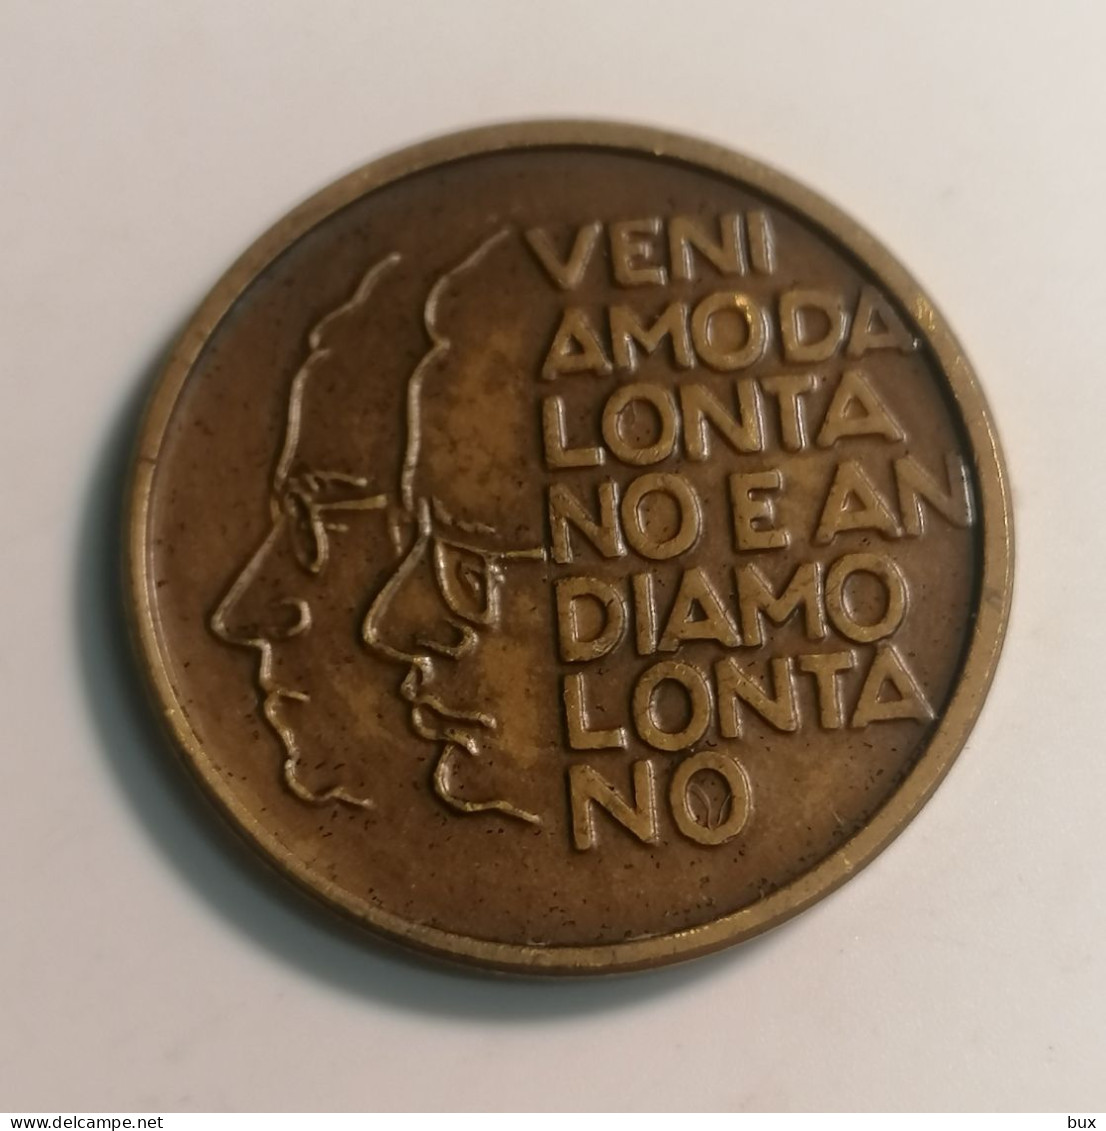 Medaglia 50 Anniversario Fondazione Del Partito Comunista Italiano 1921-1971 Medaglia Medal - Professionali/Di Società